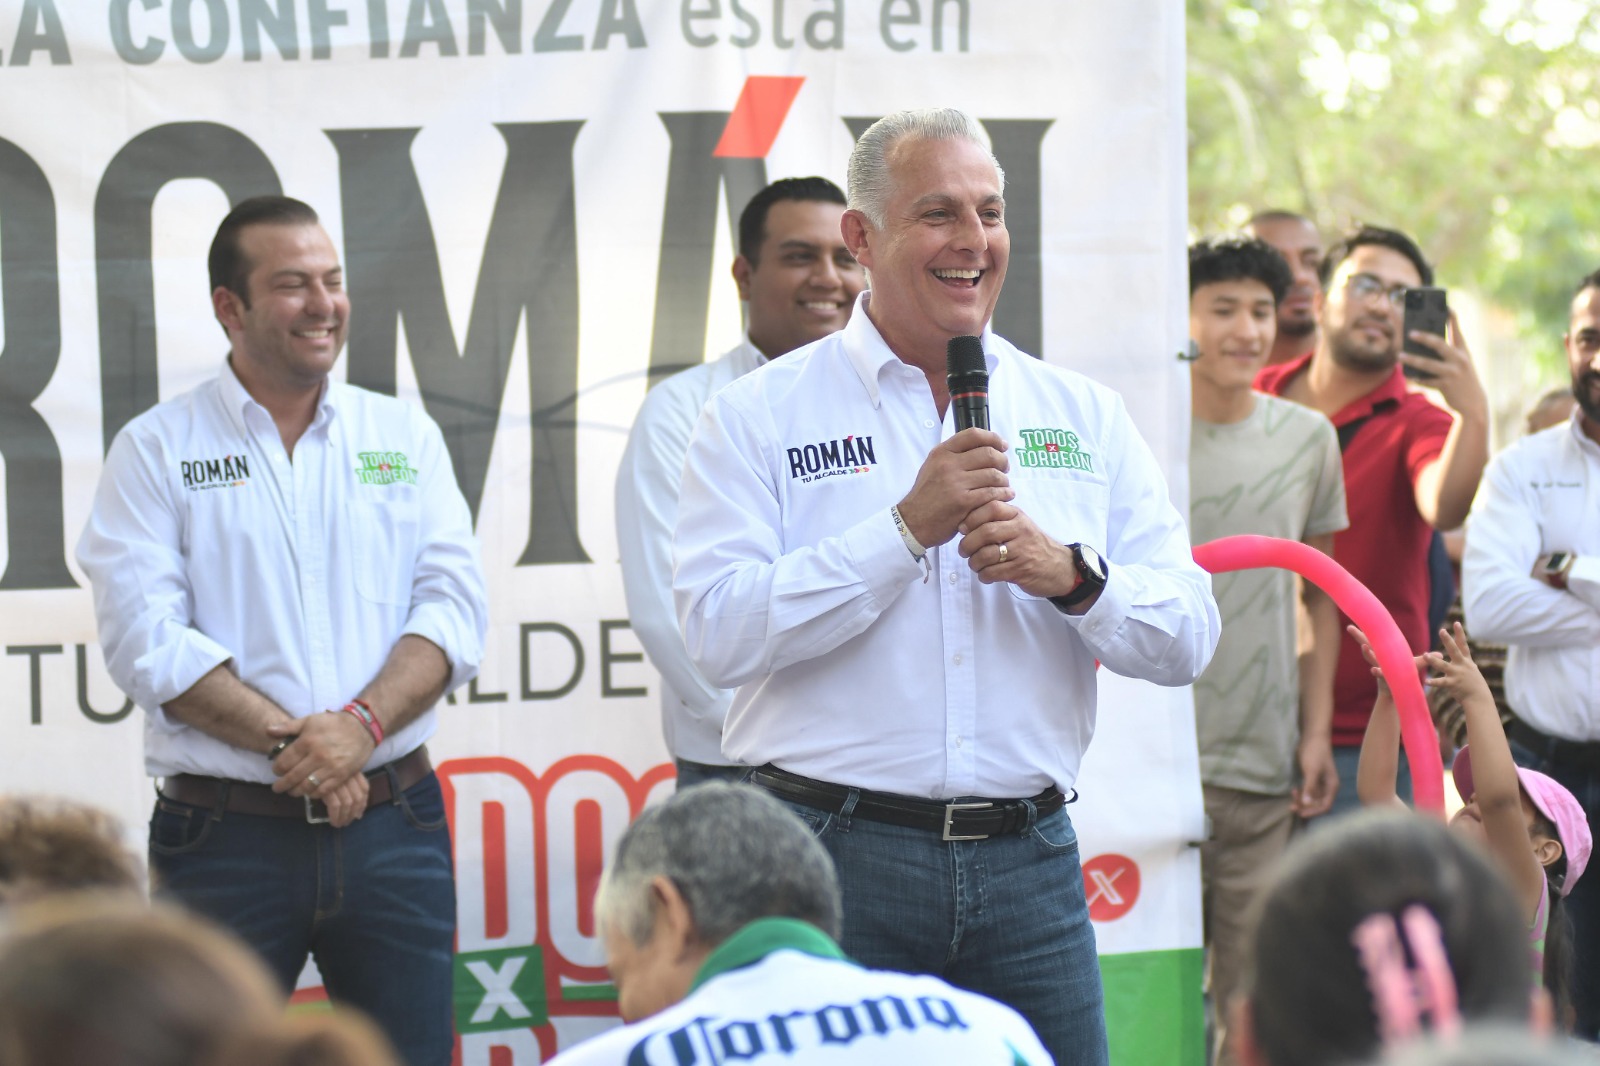 “Que se escuche fuerte y claro, en Torreón crece el empleo y vamos por más para seguir creciendo” Roman Cepeda